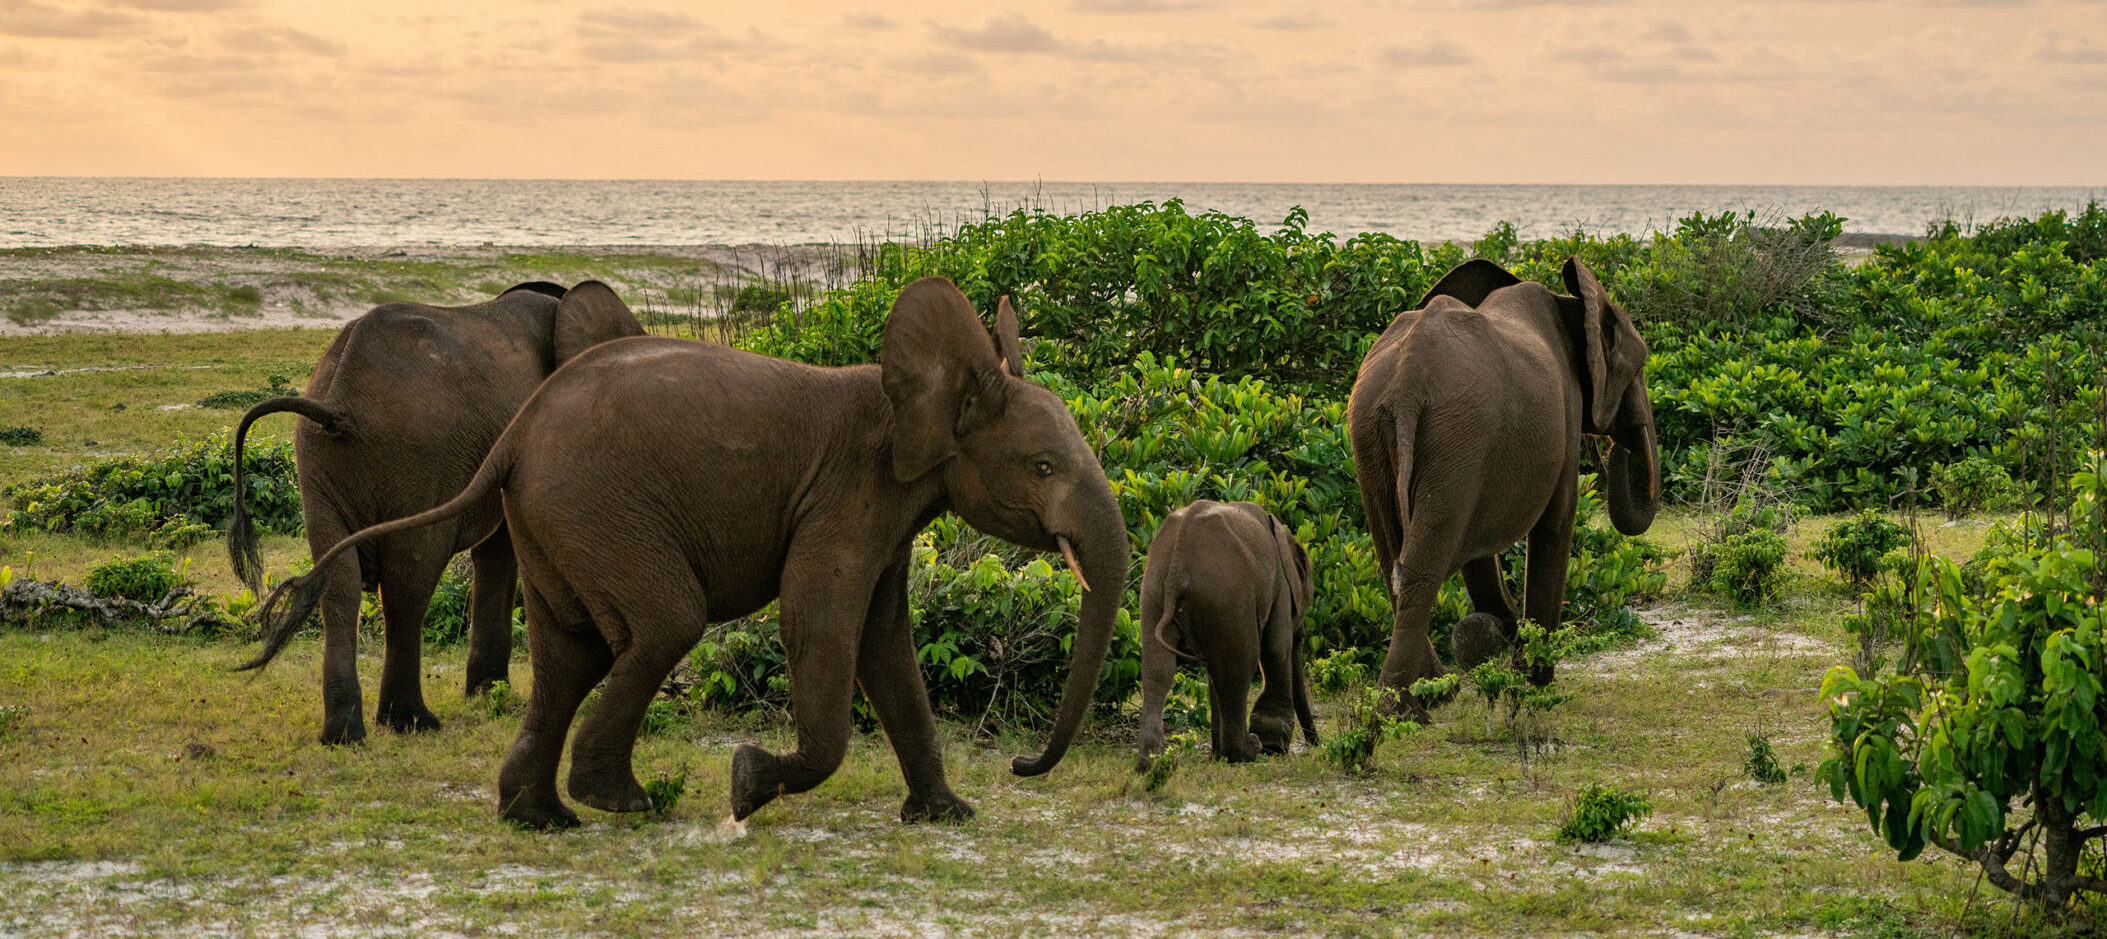 Forest Elephants in Loango National Park in Gabon